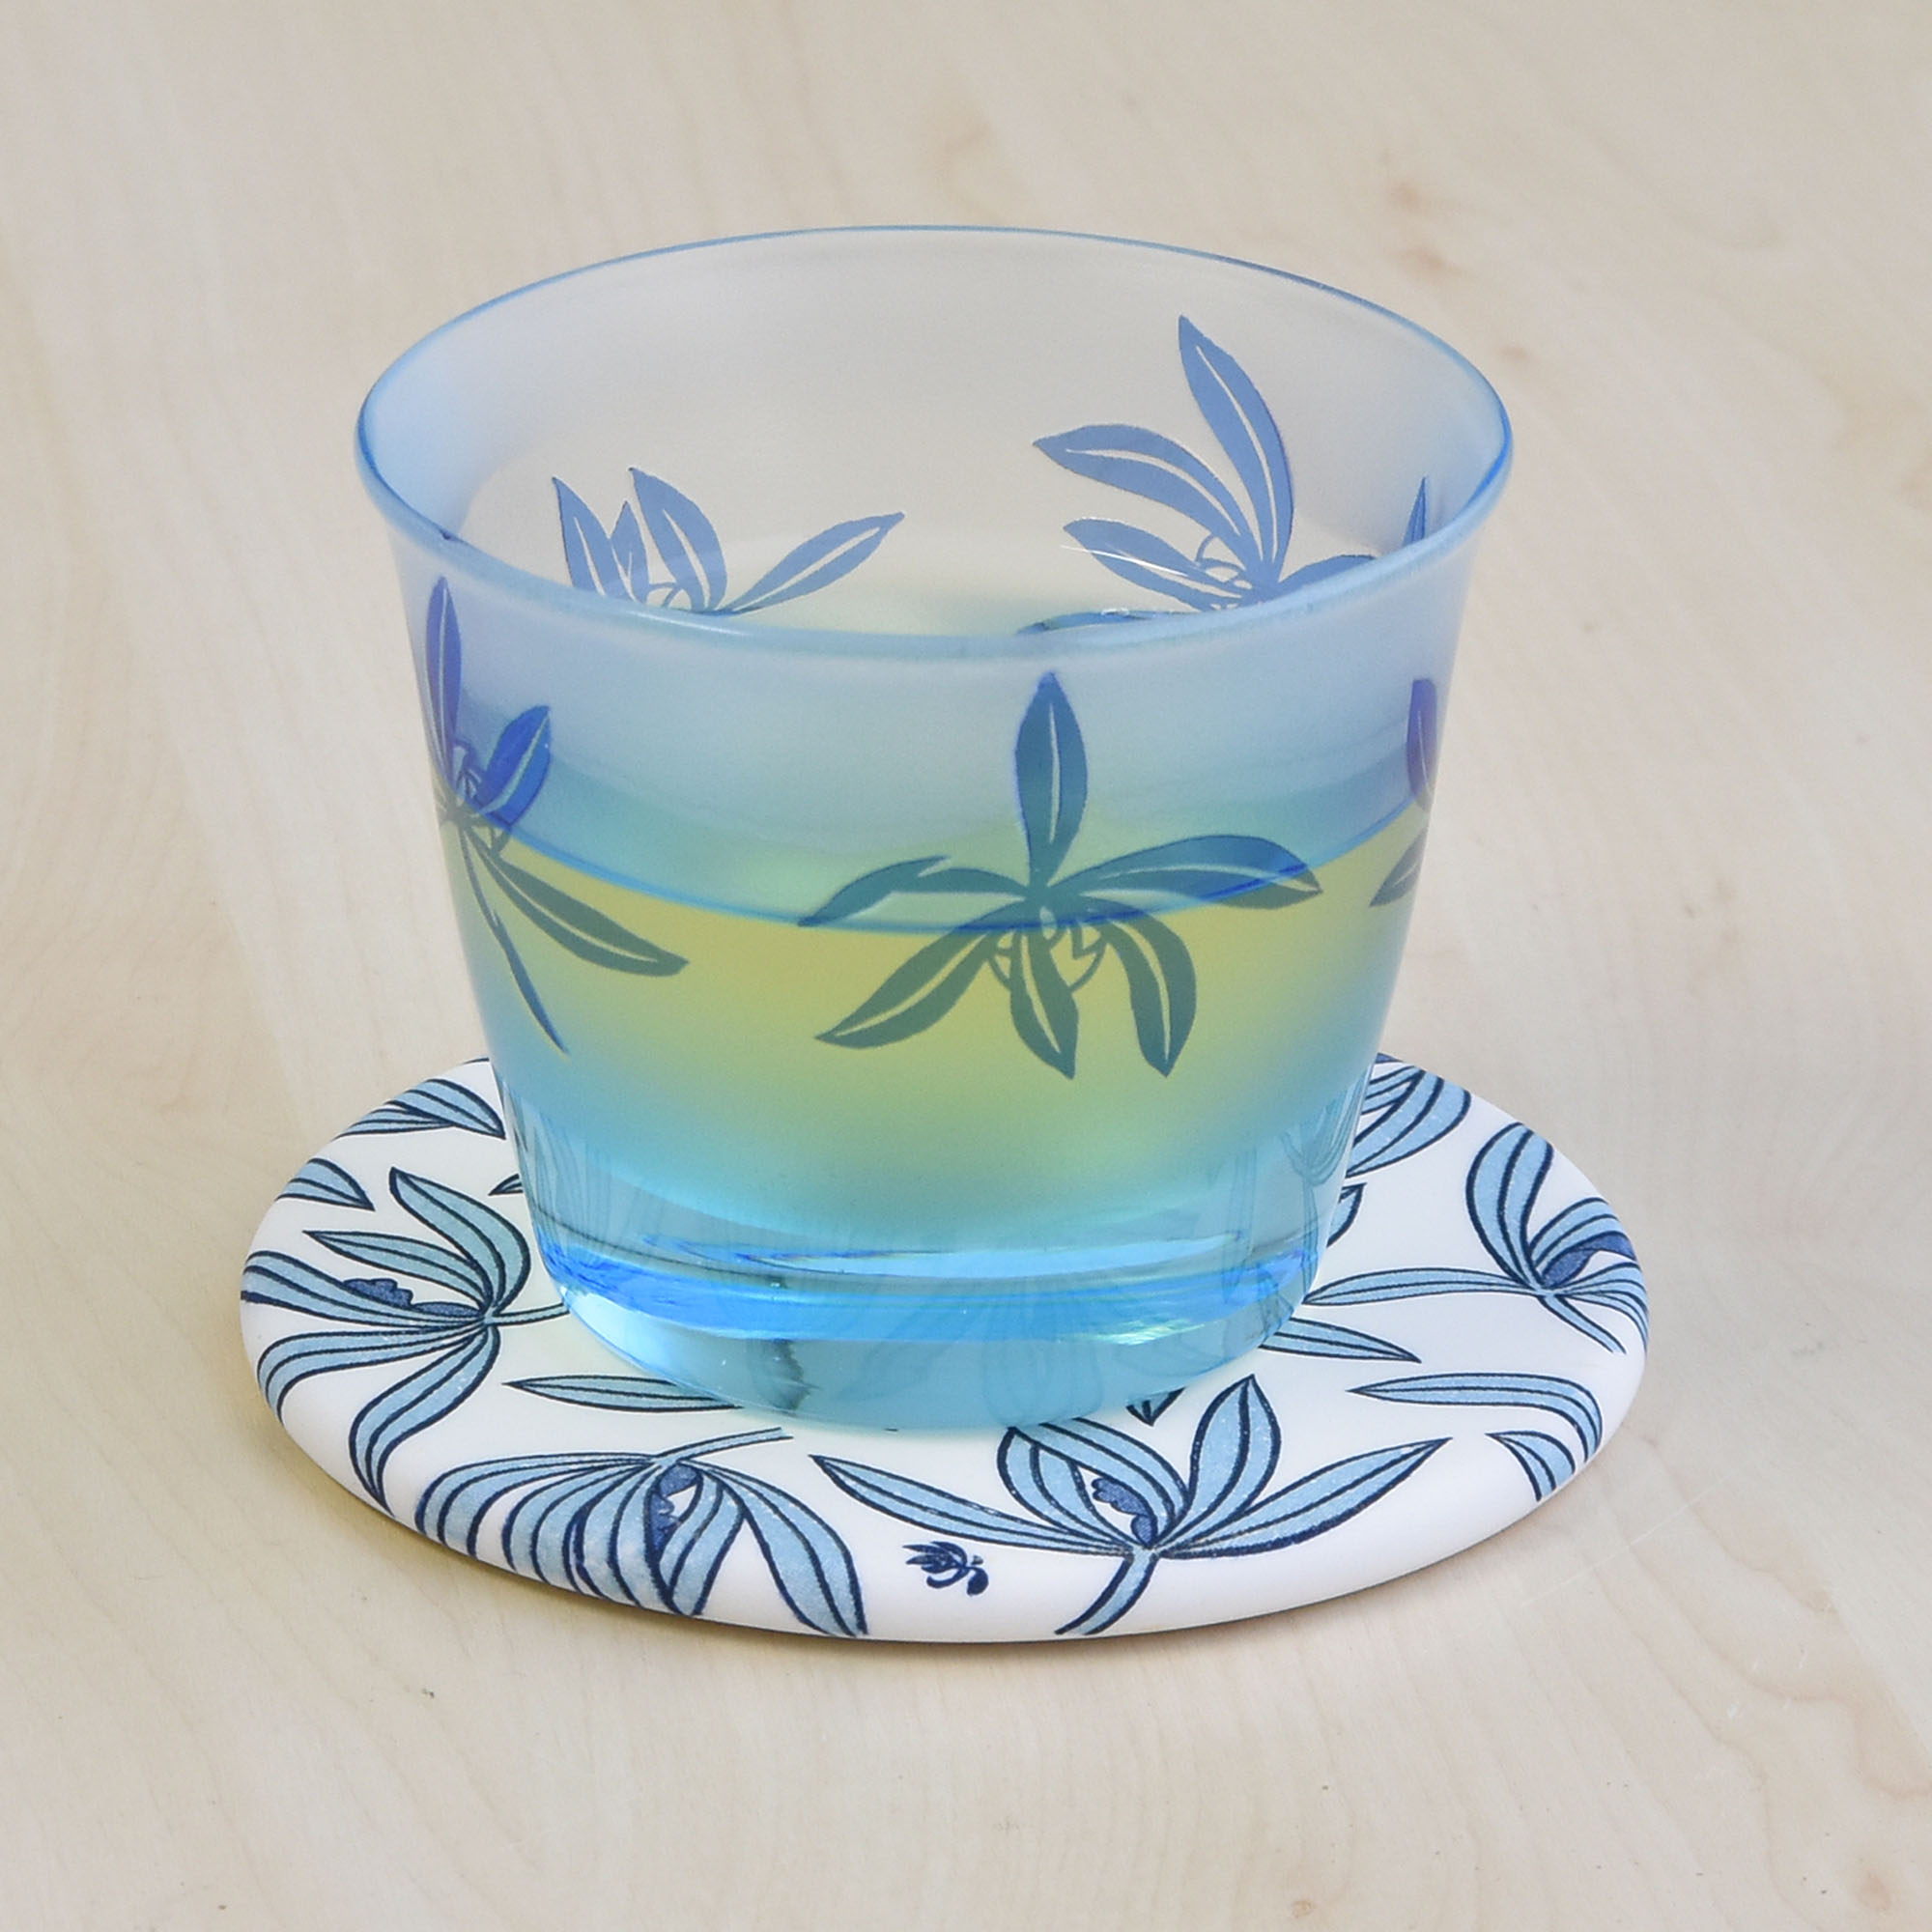 別売りのガラスの冷茶碗に合わせて使ってみました。夏のおもてなしにいいですね。